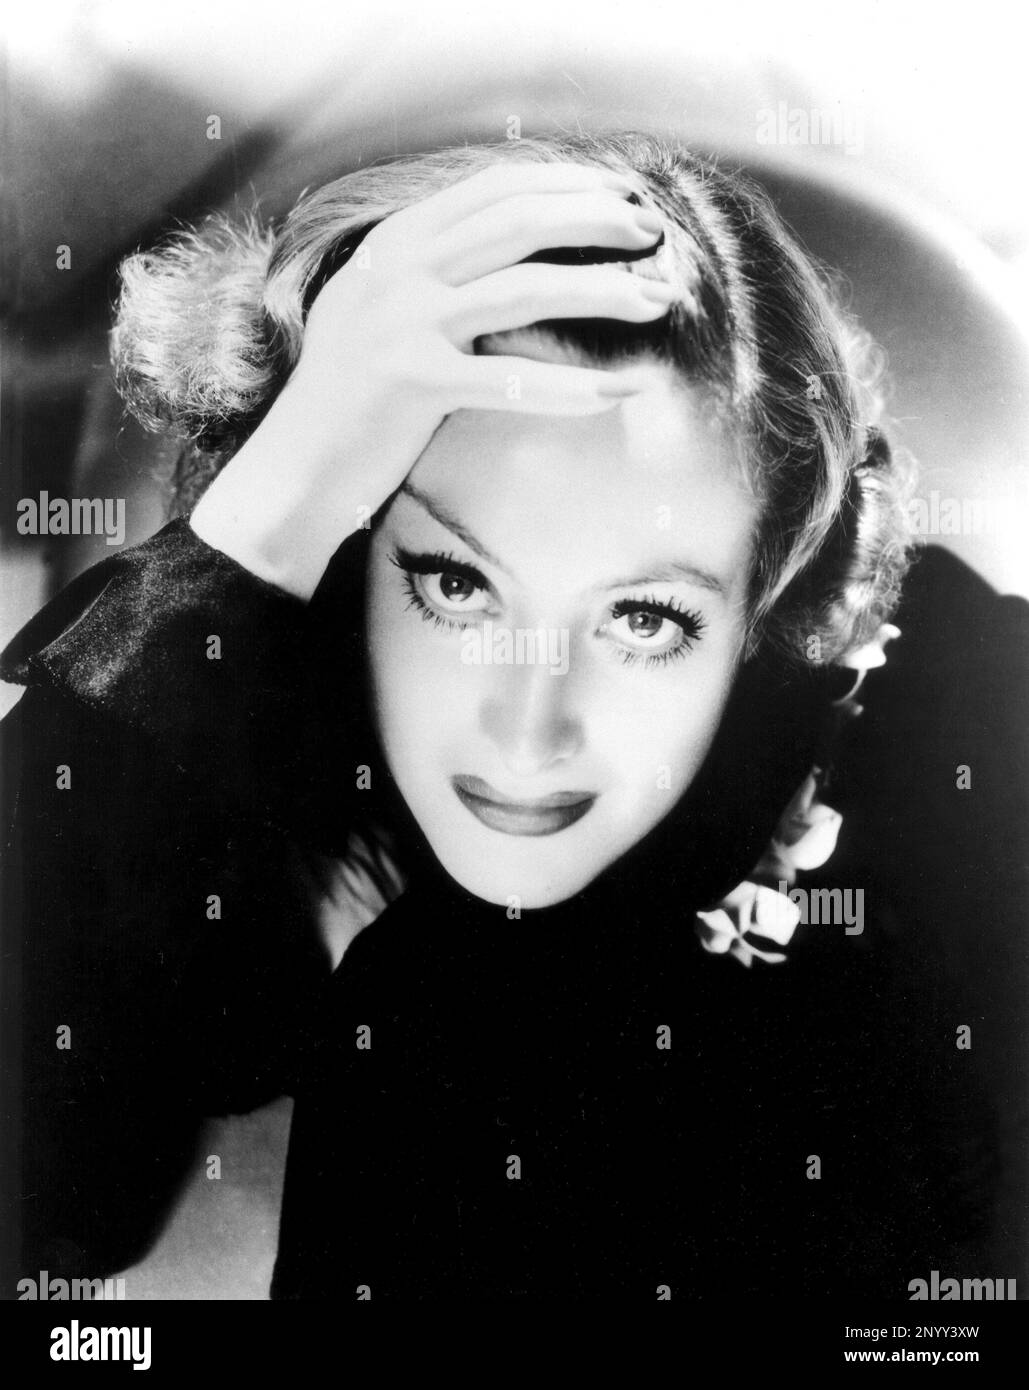 1932 , Stati Uniti d'America : l'attrice cinematografica JOAN CRAWFORD in a publicity Still for GRAND HOTEL di Edmund Goulding , Dalla storia di Vicki Baum - FILM - CINEMA - ritratto - ritratto - DIVA - DIVINA - VAMP - ART DECO - ANNI TRENTA - '30 - mani - mano - mani - unghie - unghie --- Archivio GBB Foto Stock